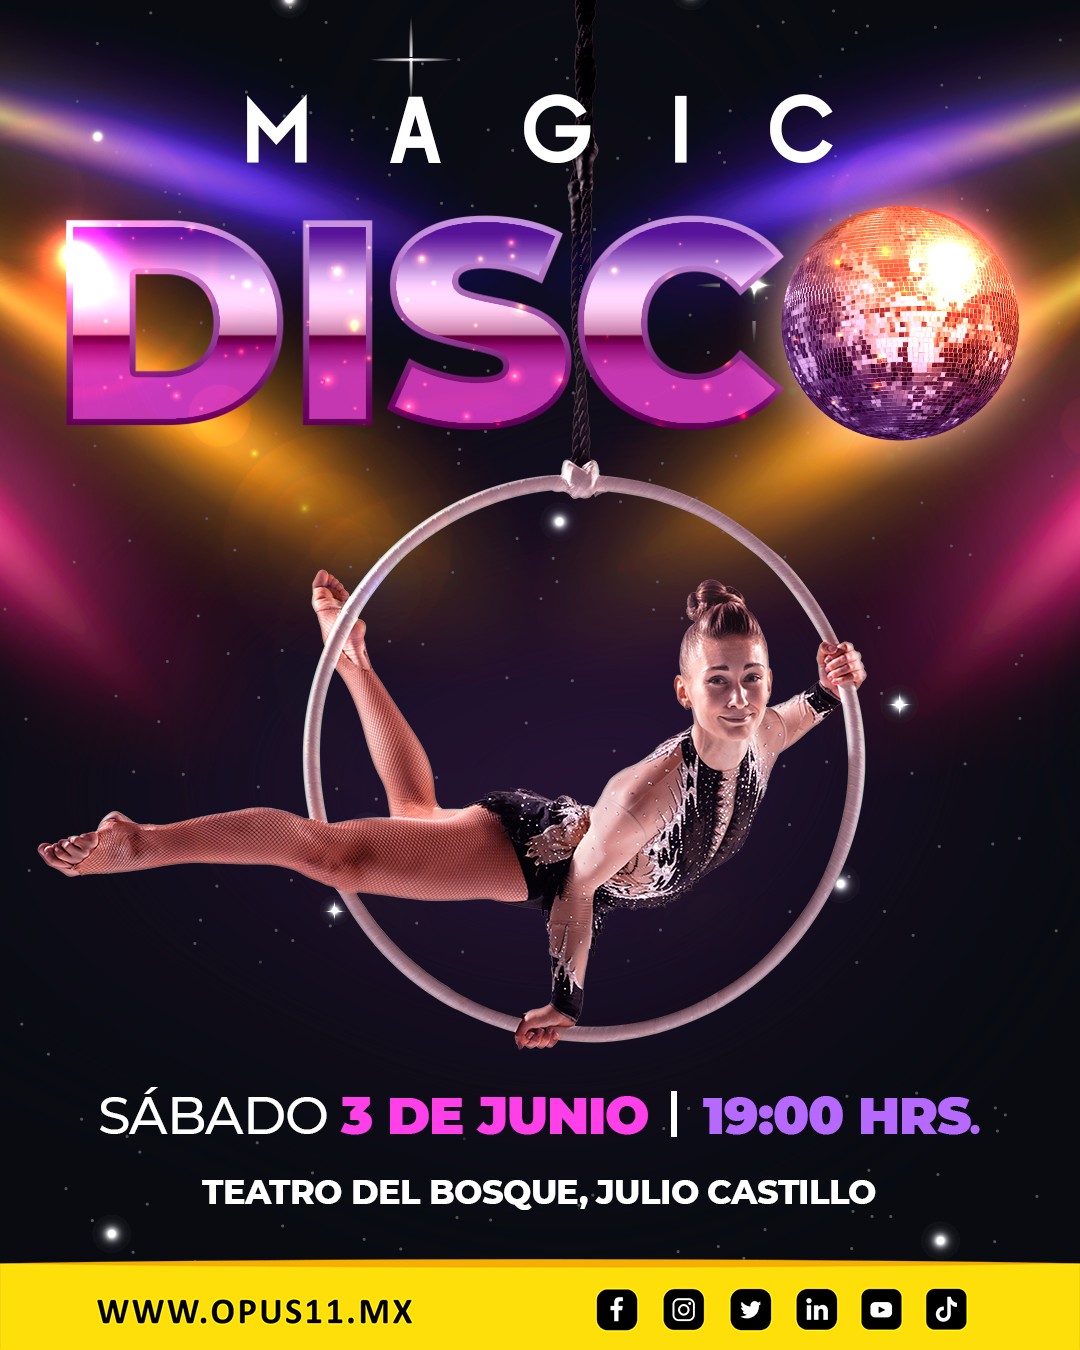 ¡Disfruta de “Magic Disco”! Un concierto que reúne lo mejor de la danza aérea y musica disco en versión sinfónica